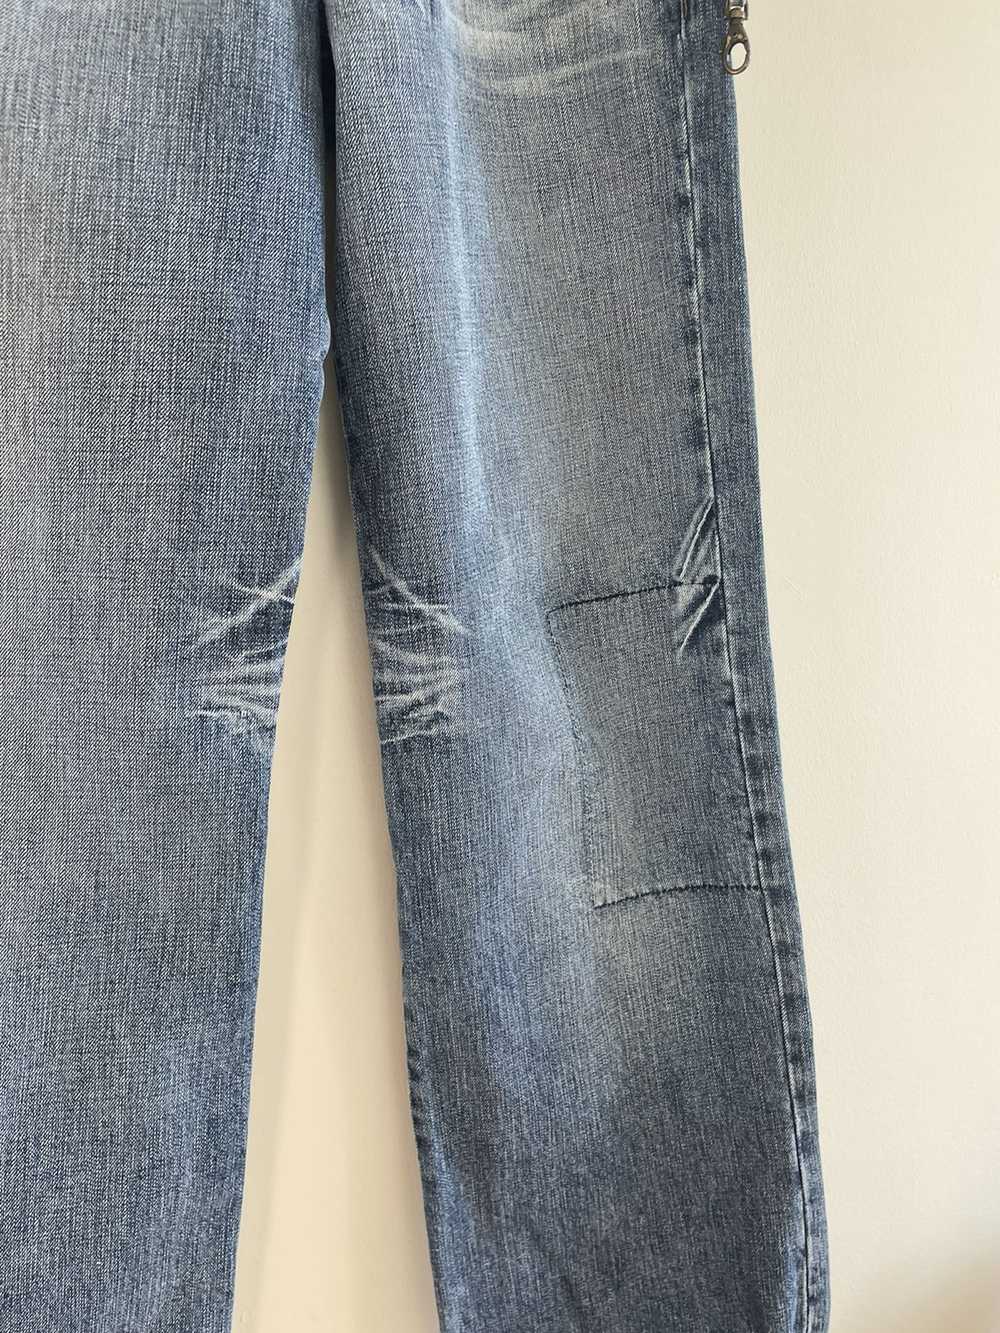 Schott NYC Denim Rider Jeans Wide Leg Distressed … - image 4